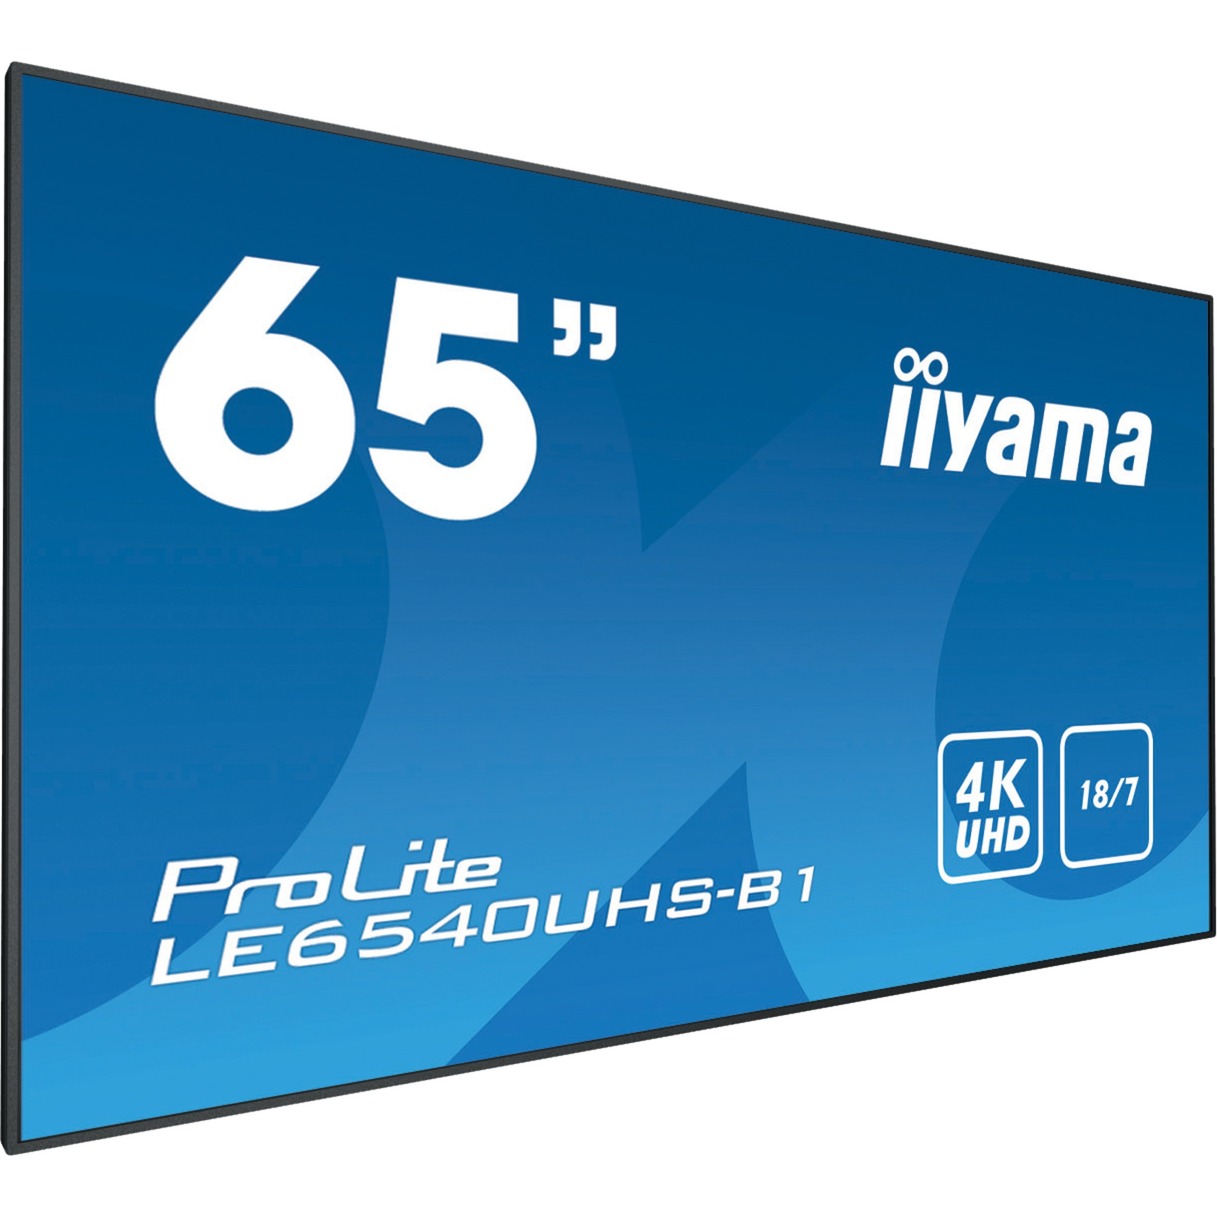 LE6540UHS-B1 wyświetlacz znaków 164,1 cm (64.6") LED (Dioda elektroluminescencyjna) 4K Ultra HD Czarny